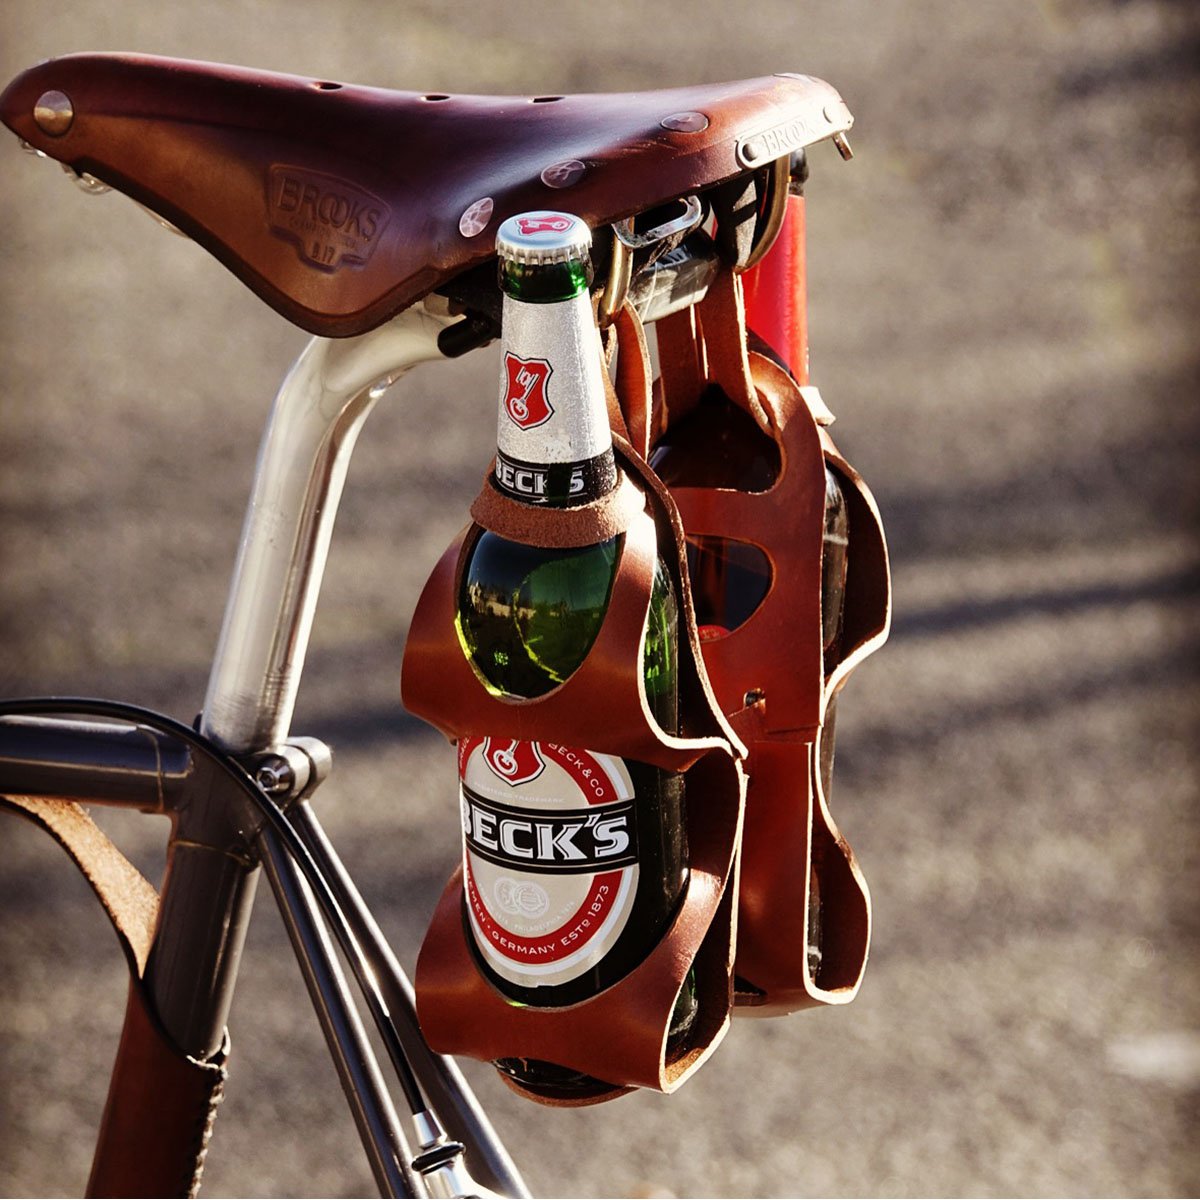 Magnifique idée cadeau, que ce porte-bouteille pour vélo !